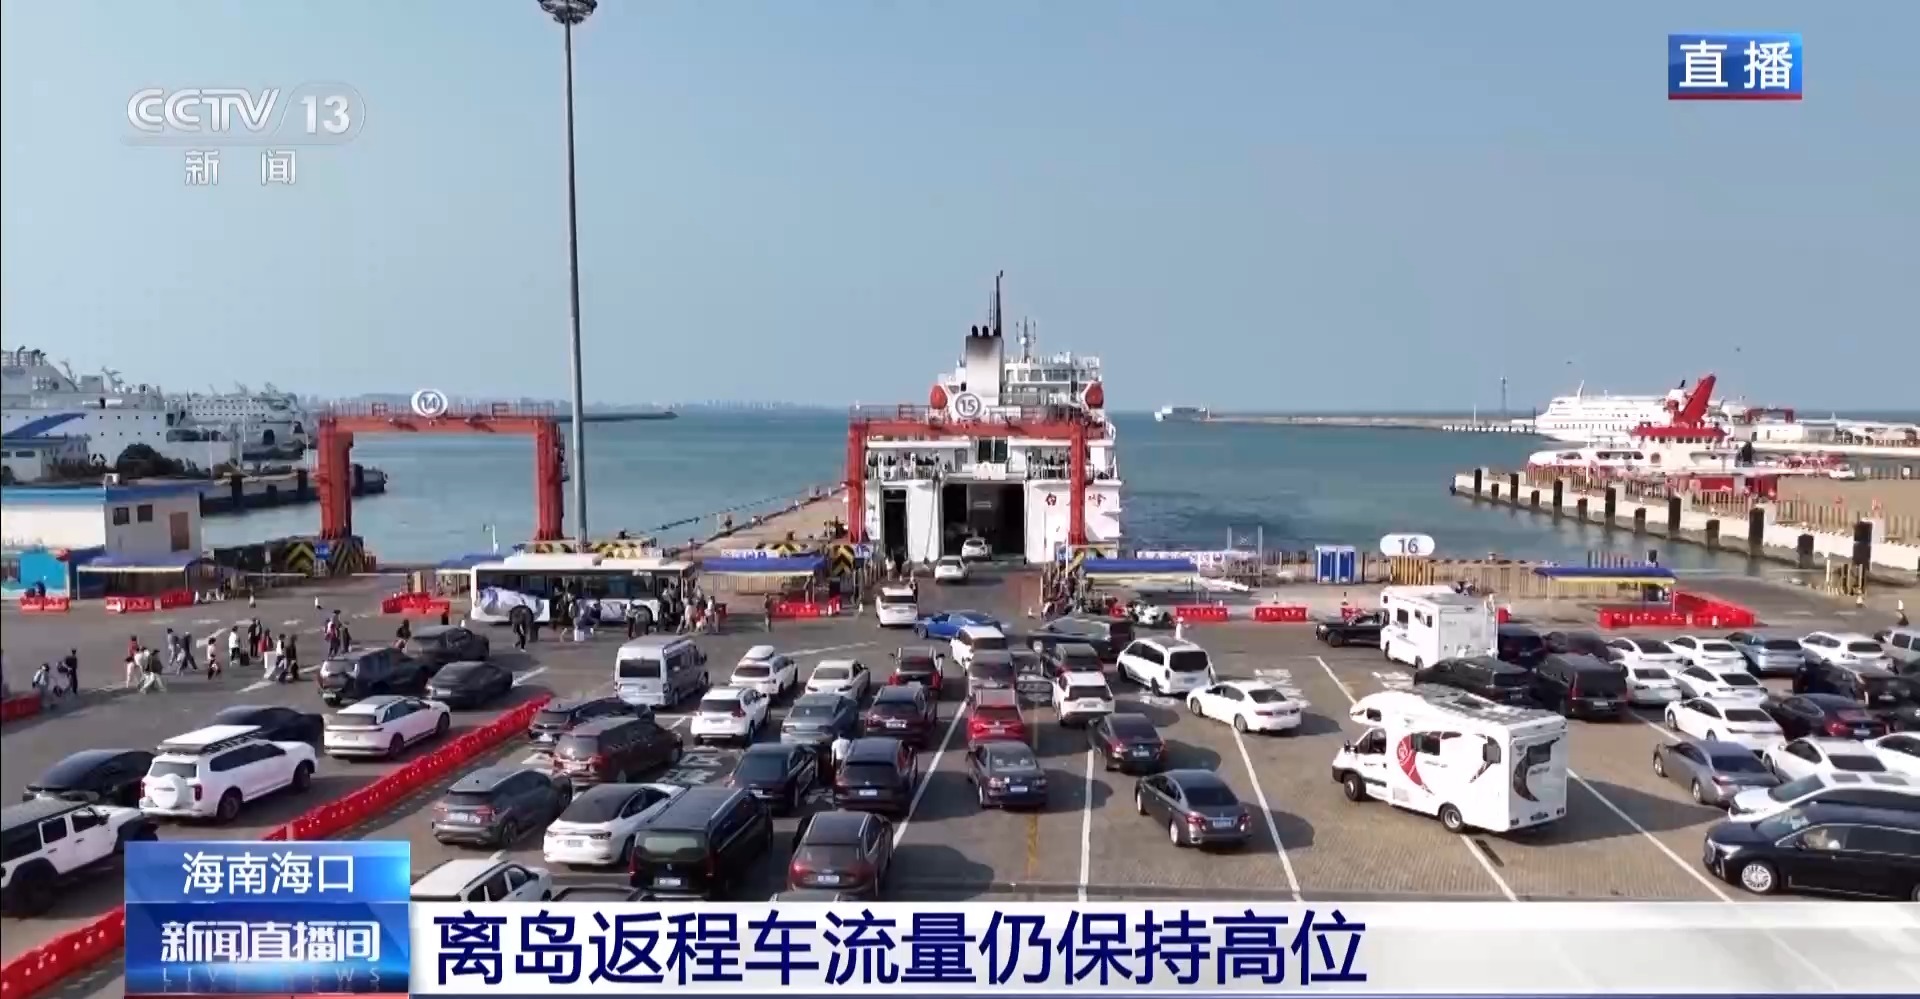 海口三港已恢复正常运输秩序 离岛车辆排队时间大幅缩短